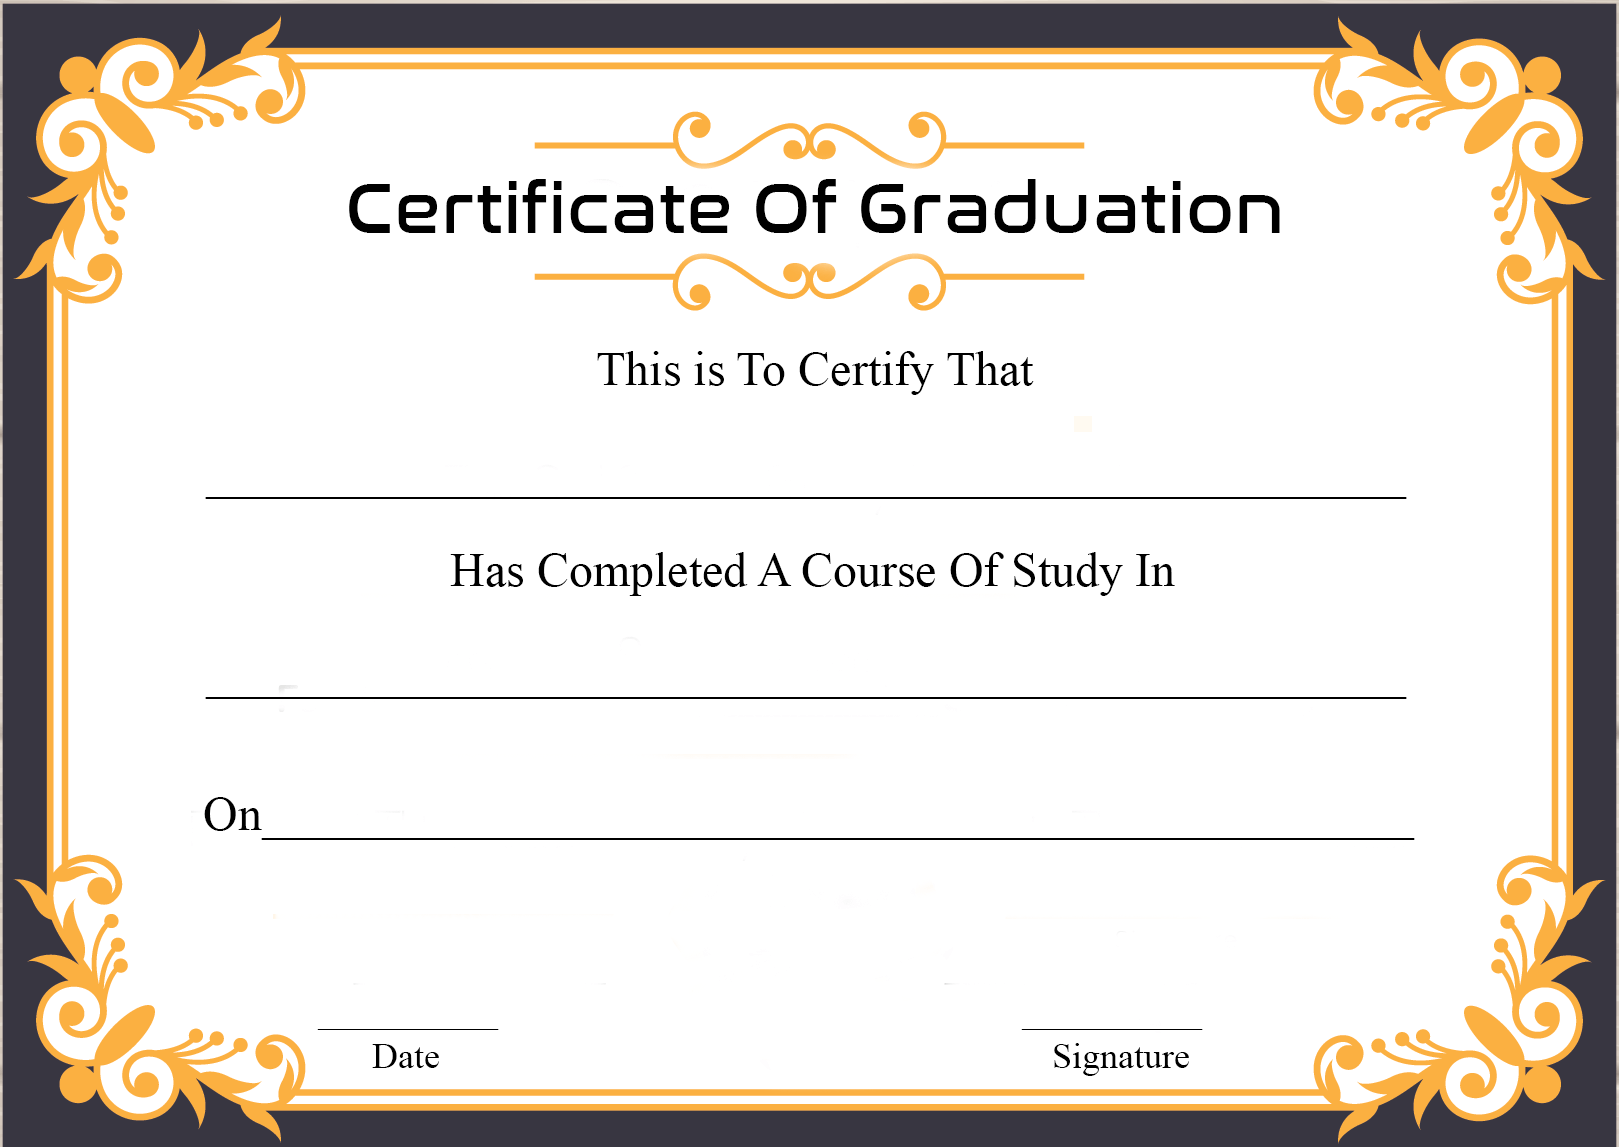 Certificate Of Graduation Sample